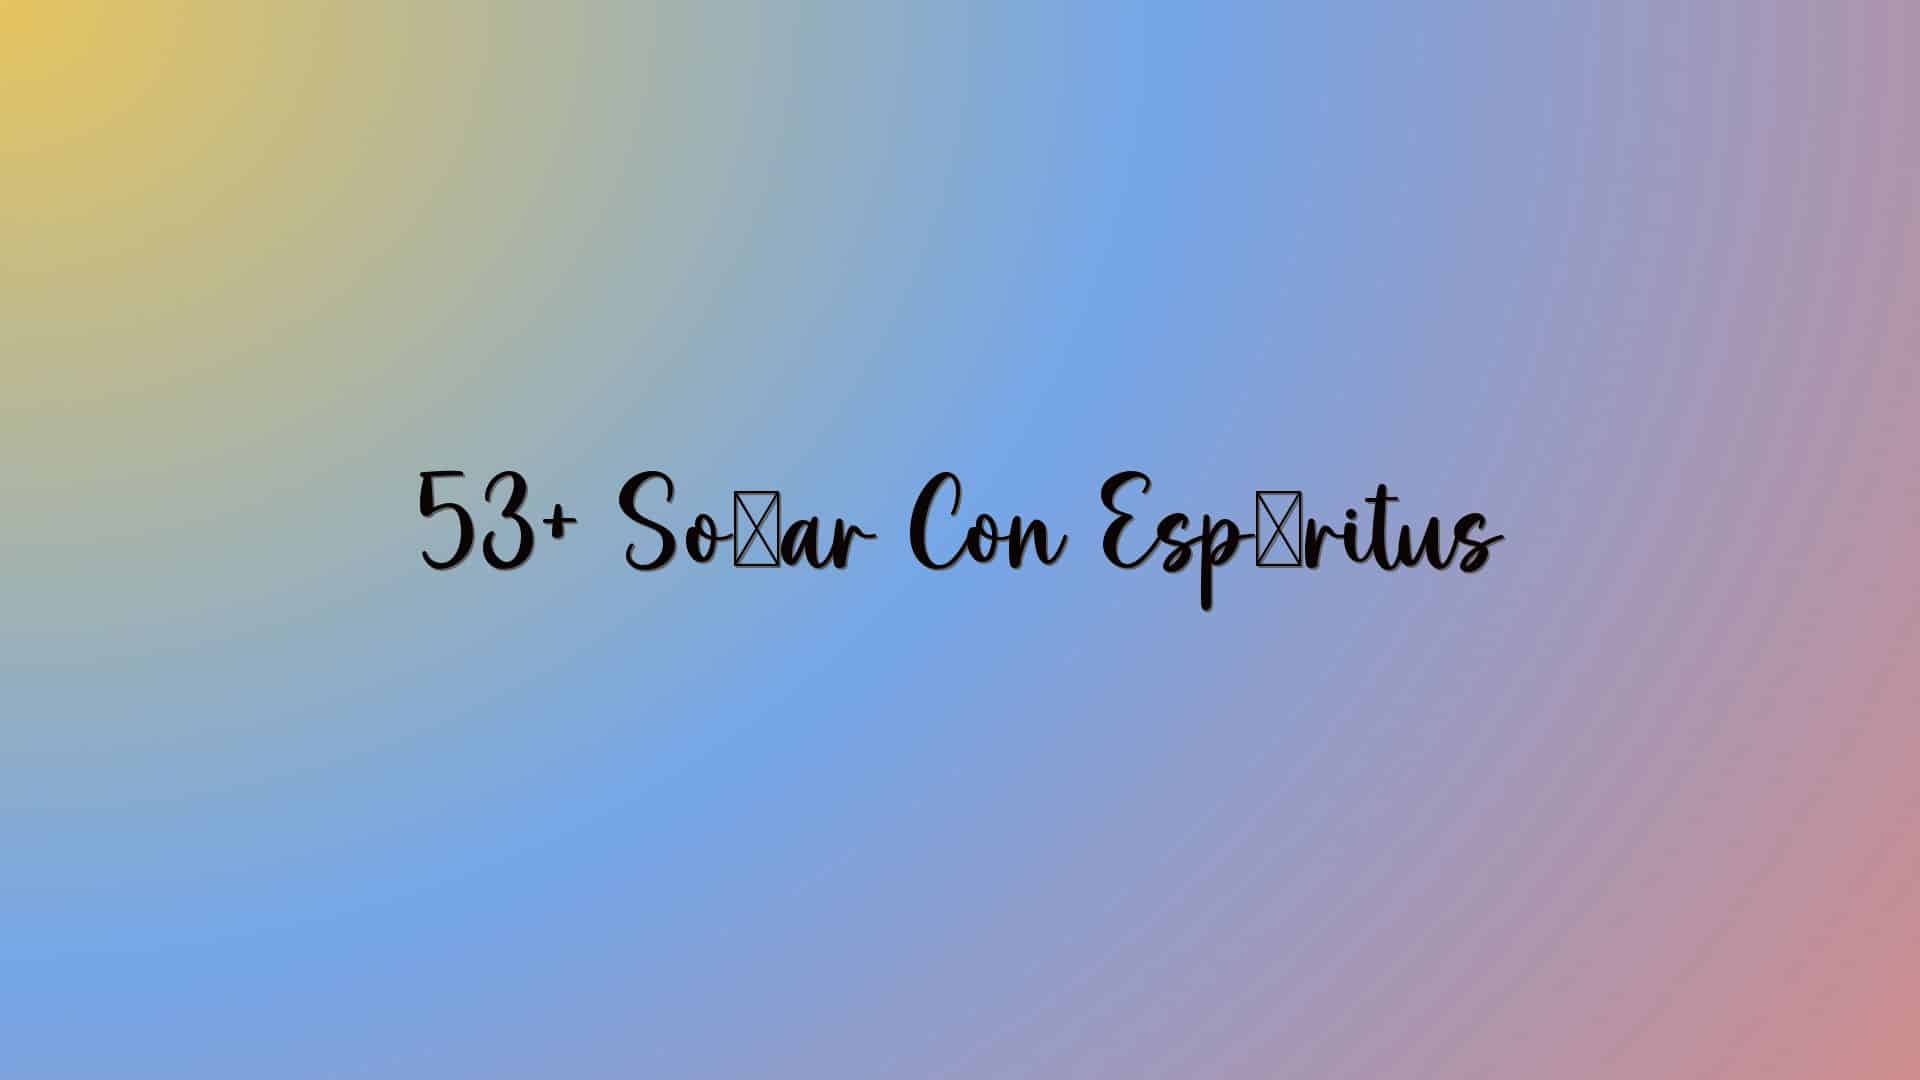 53+ Soñar Con Espíritus